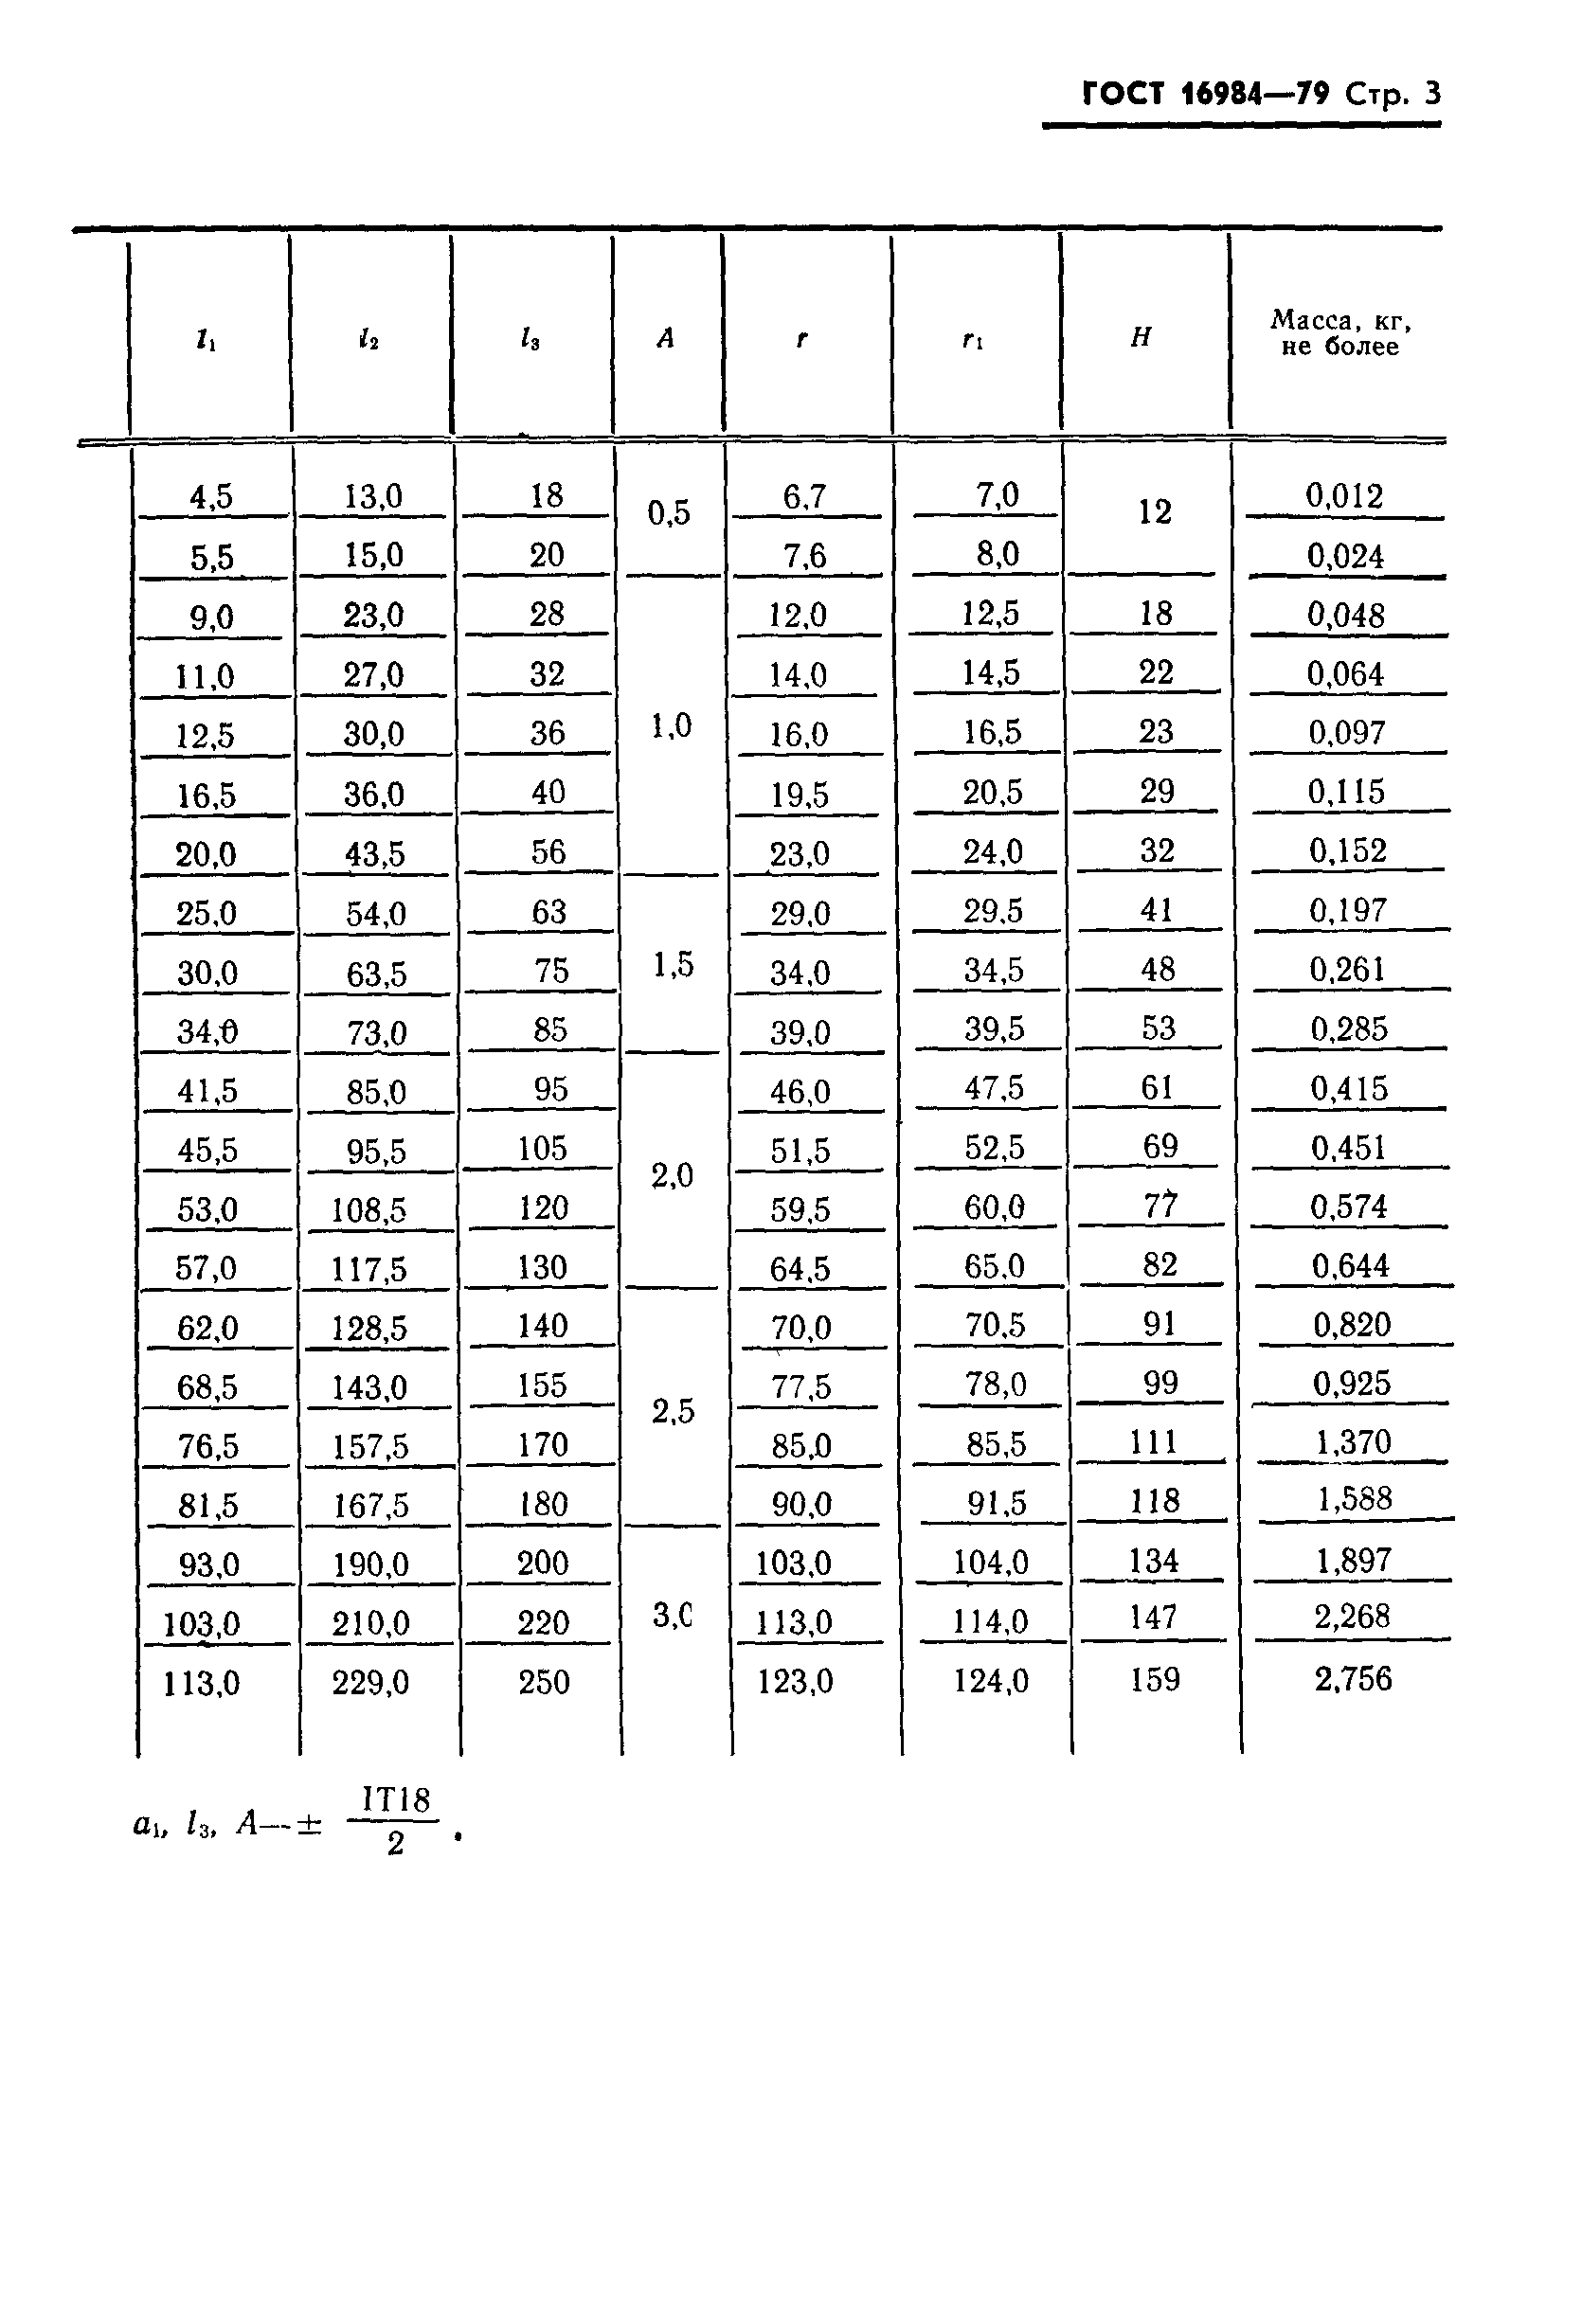 Гост 10112-2001 ключи гаечные двусторонние. размеры комбинаций зевов